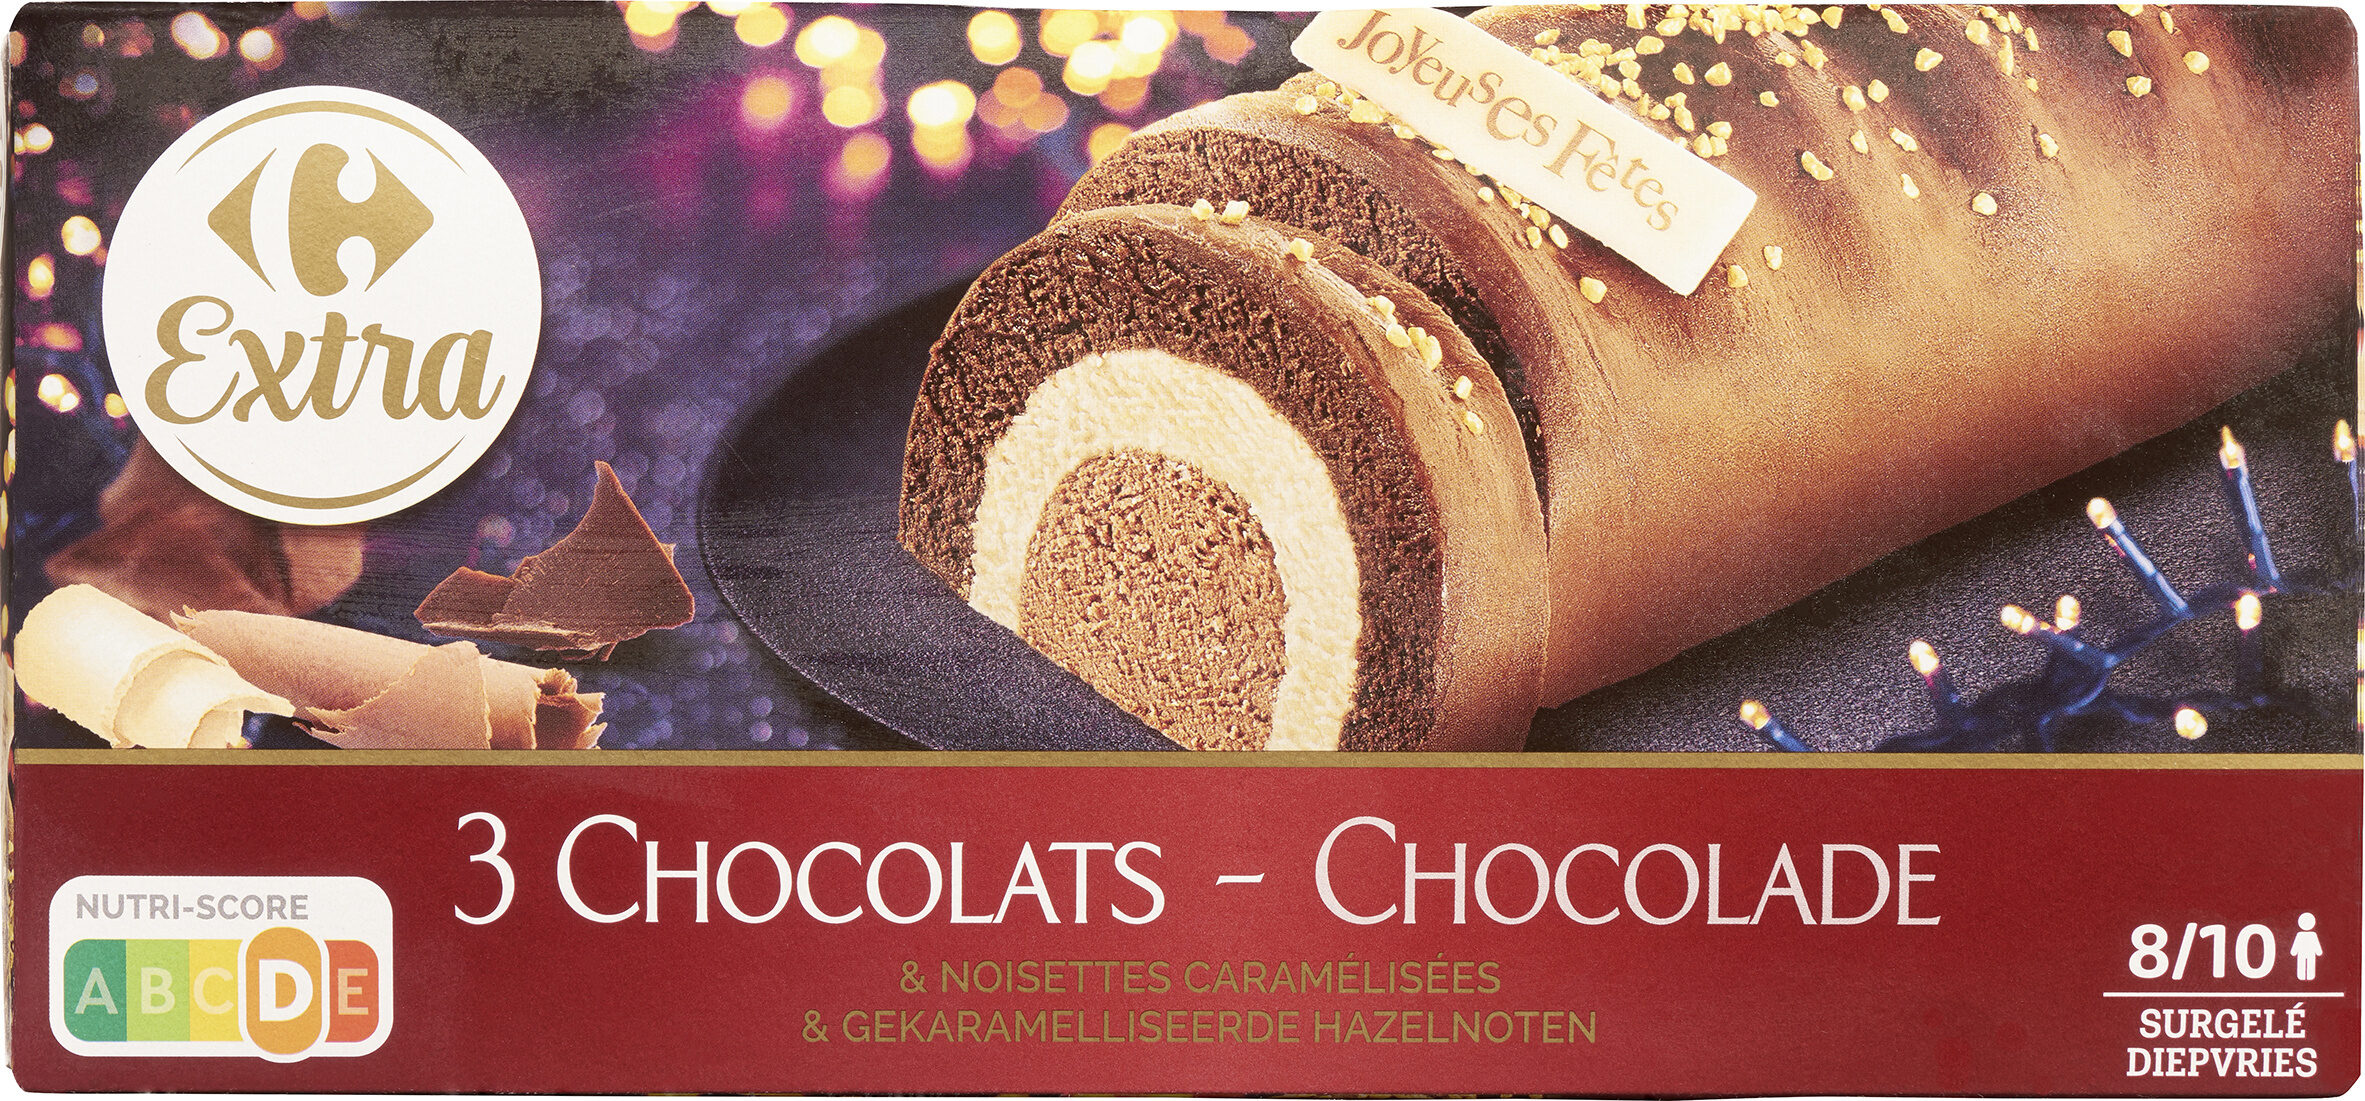 3 Chocolates & noisettes caramélisées - Producte - fr